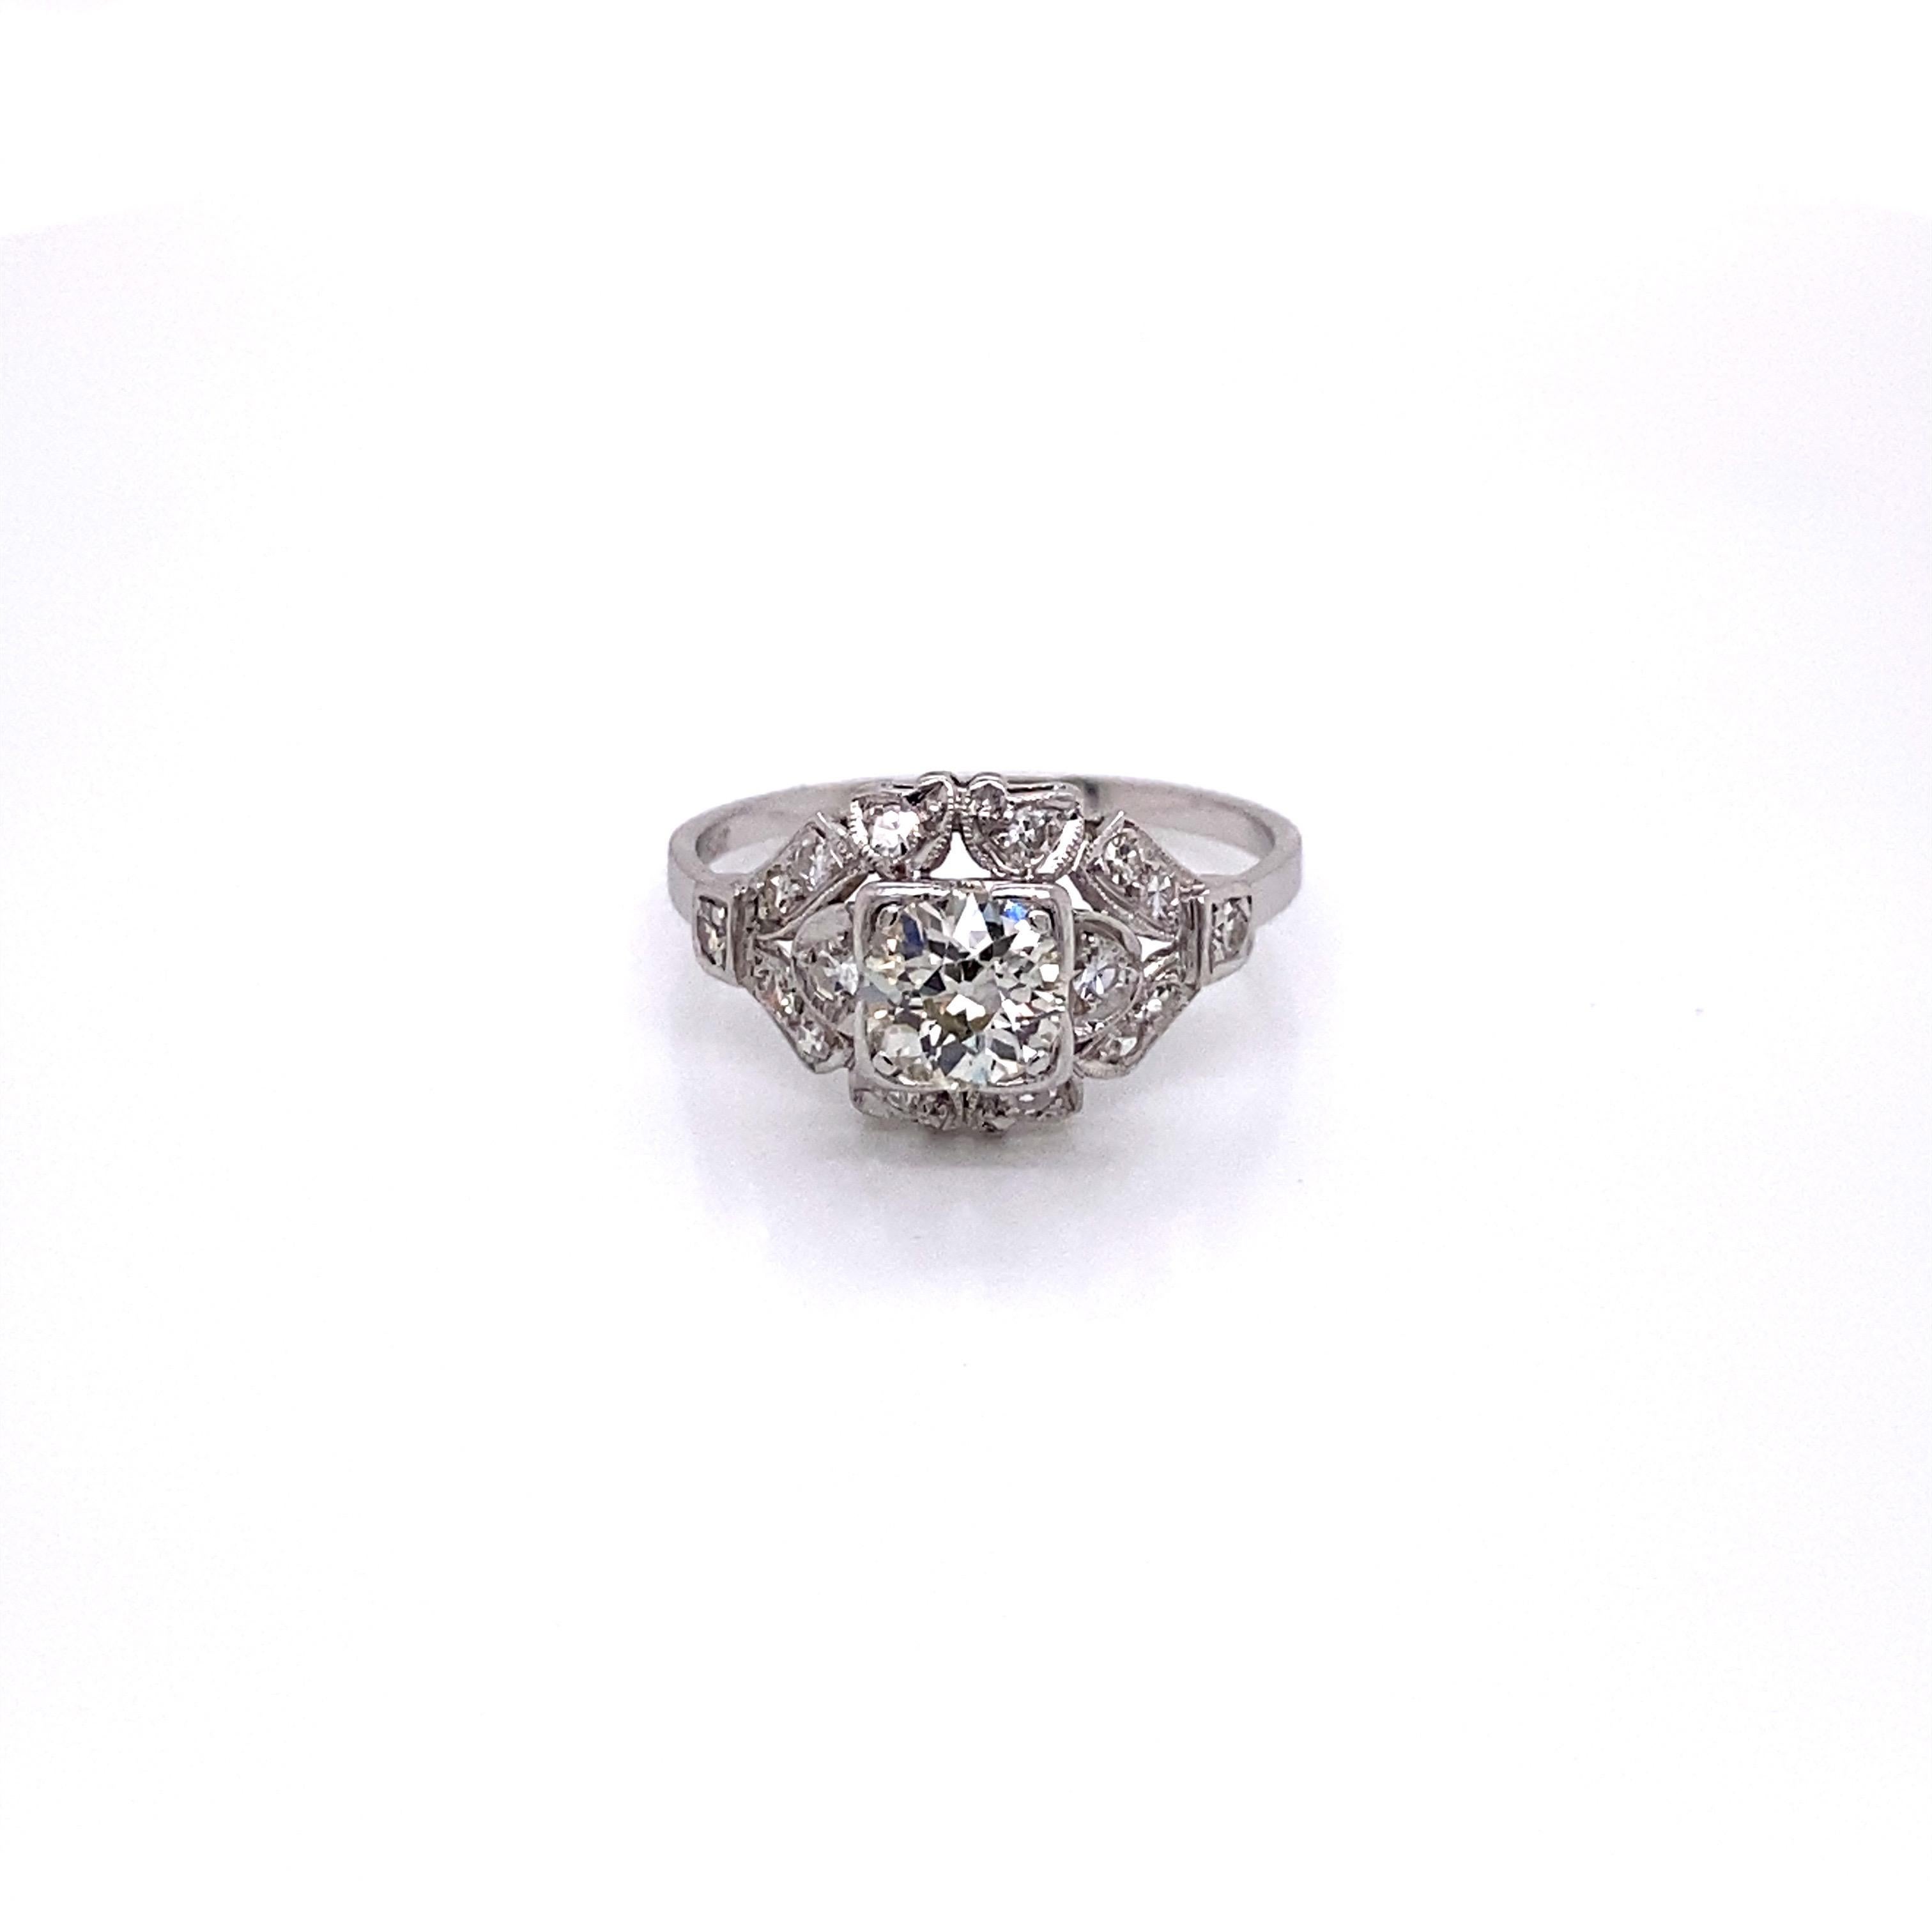 Vintage European Cut Diamond in Platinum Art Deco Ring - die Mitte European Cut Diamant wiegt .77ct mit der Qualität der K Farbe und VS2 Klarheit. Der Diamant sitzt tief in einer sehr detaillierten Art-Déco-Platinfassung mit 16 einzeln geschliffenen